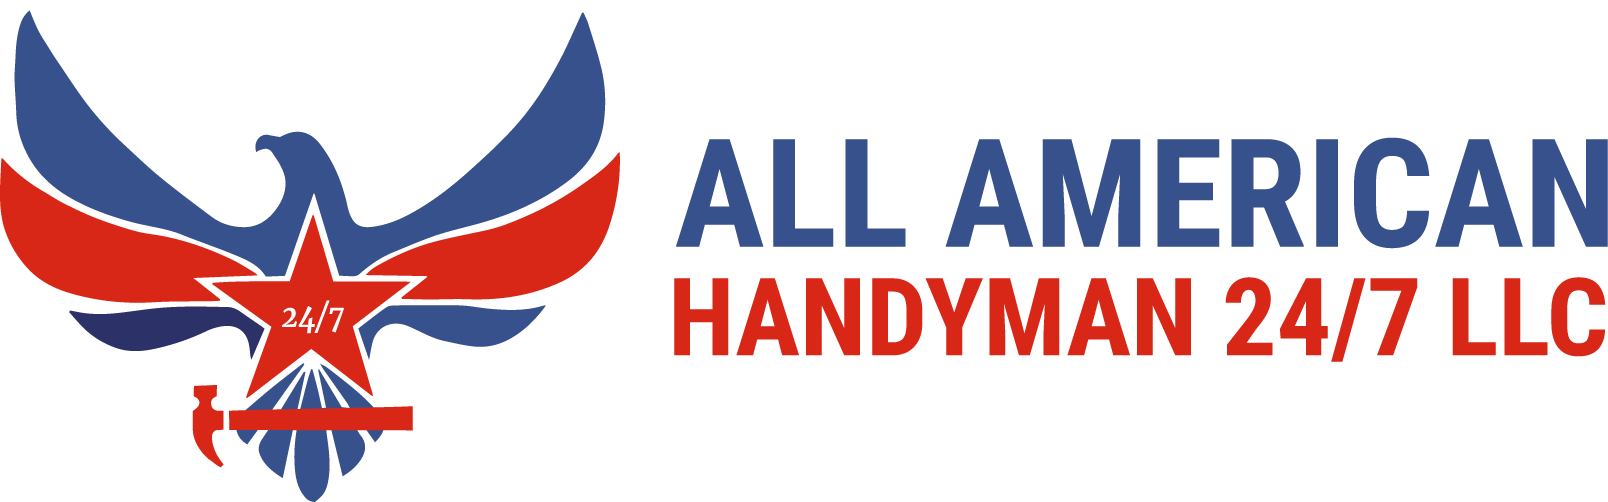 All American Handyman 24/7 LLC